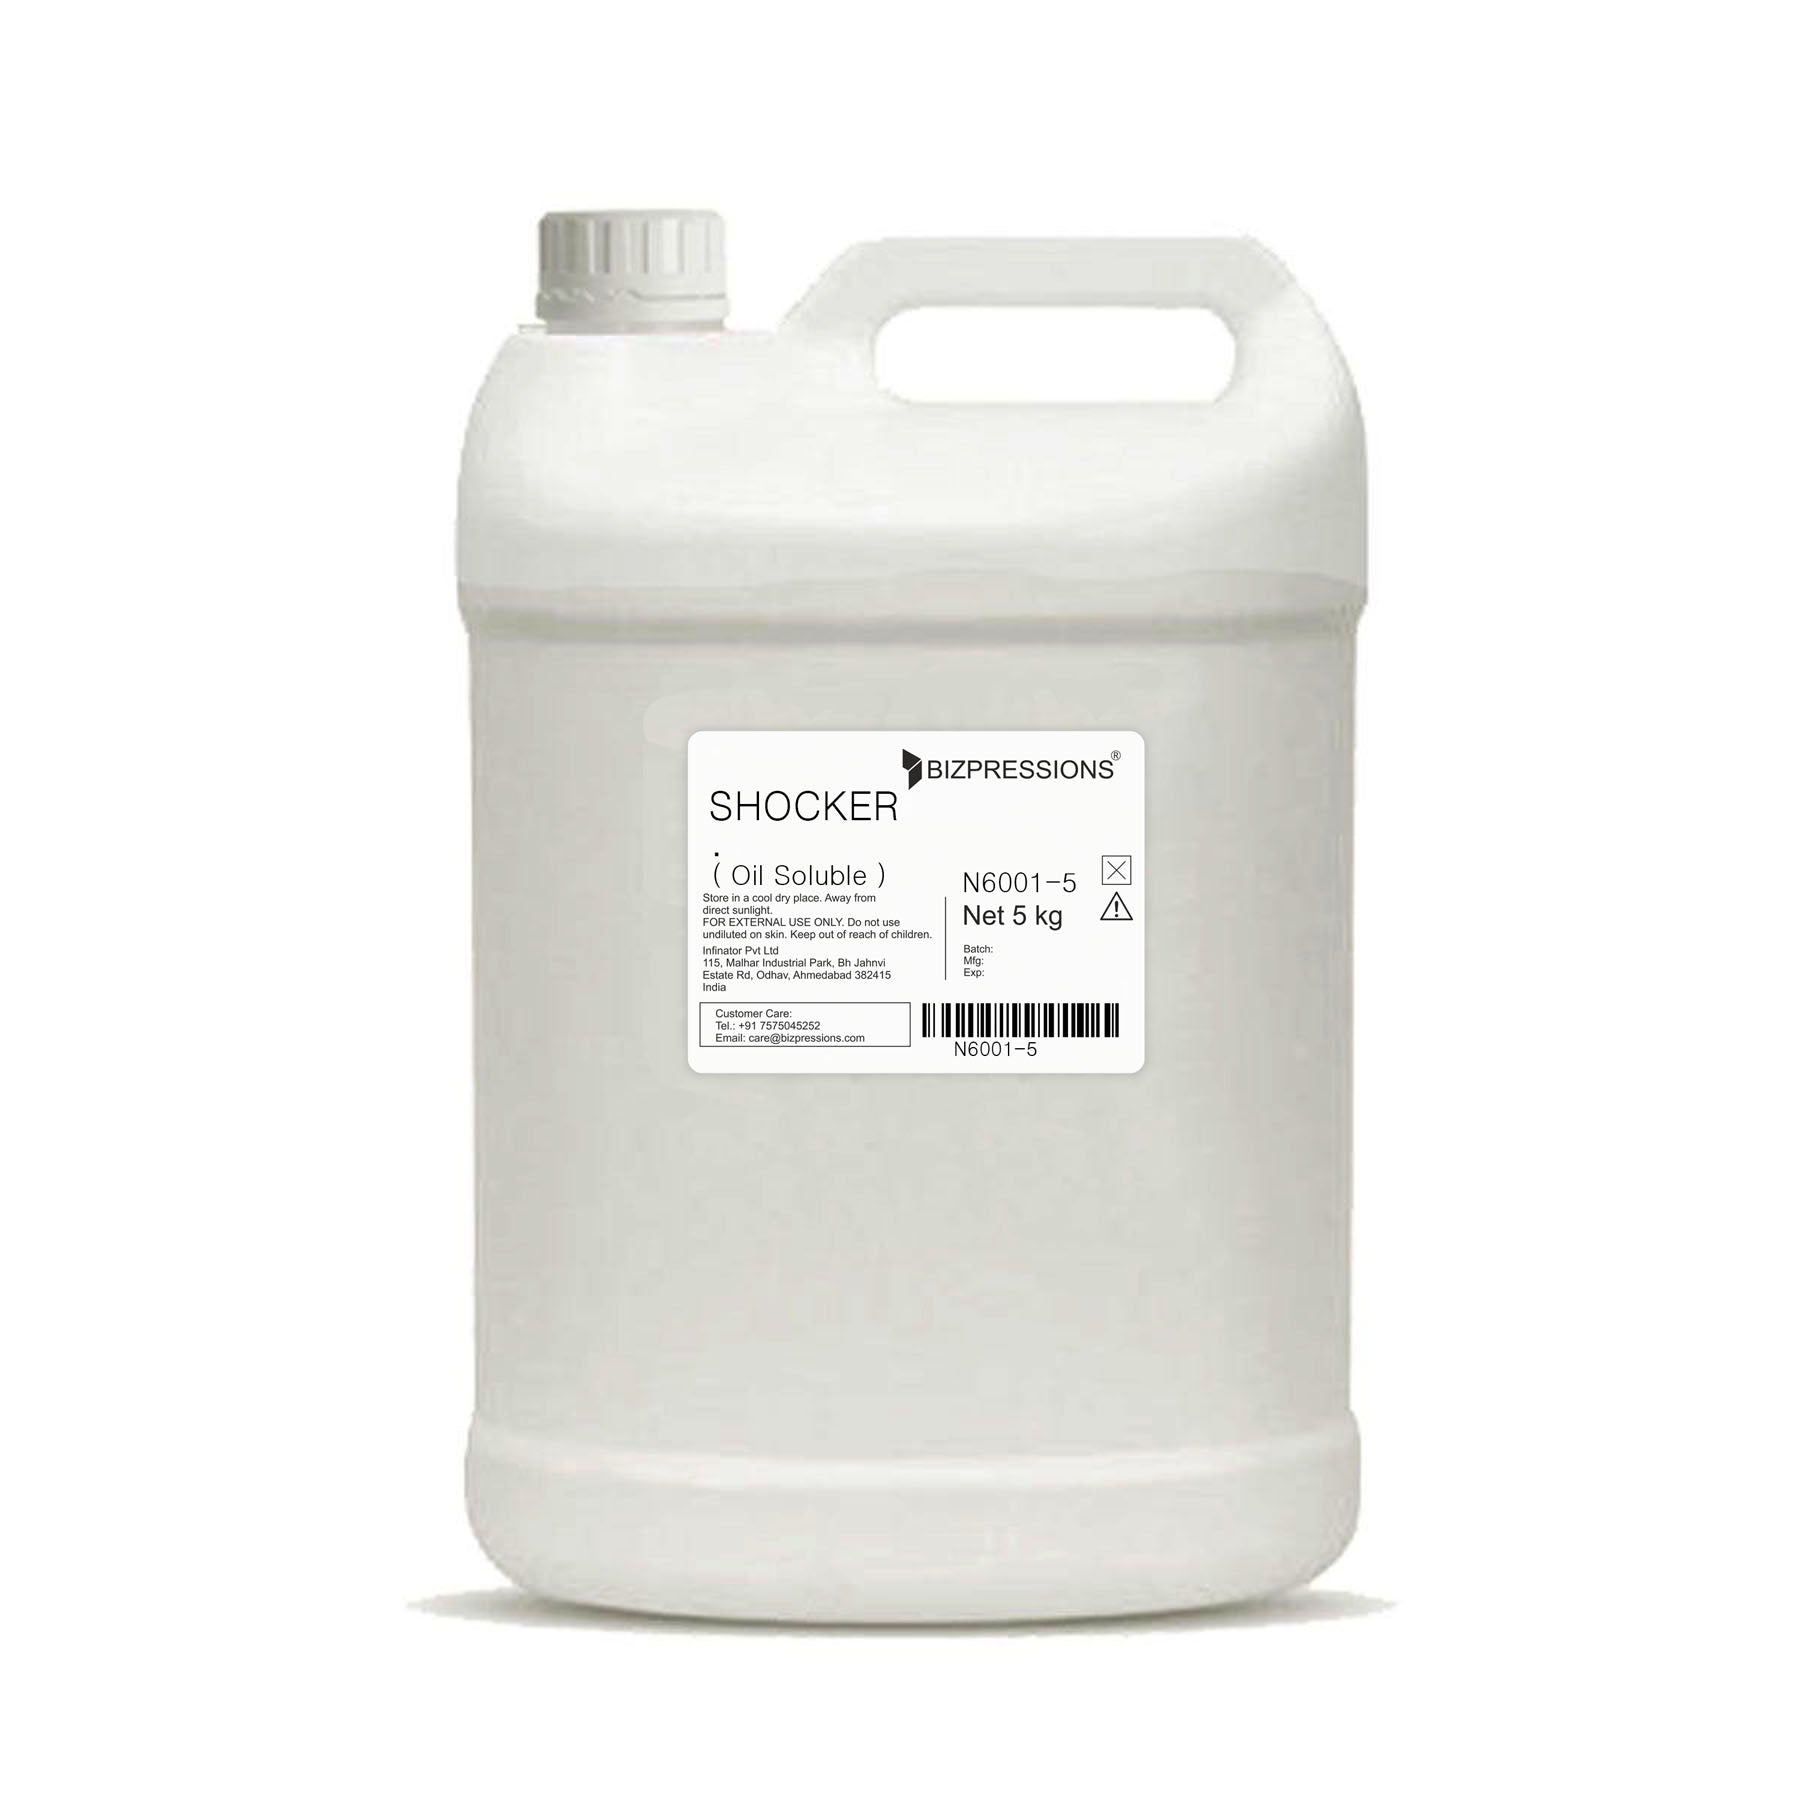 SHOCKER - Fragrance ( Oil Soluble ) - 5 kg